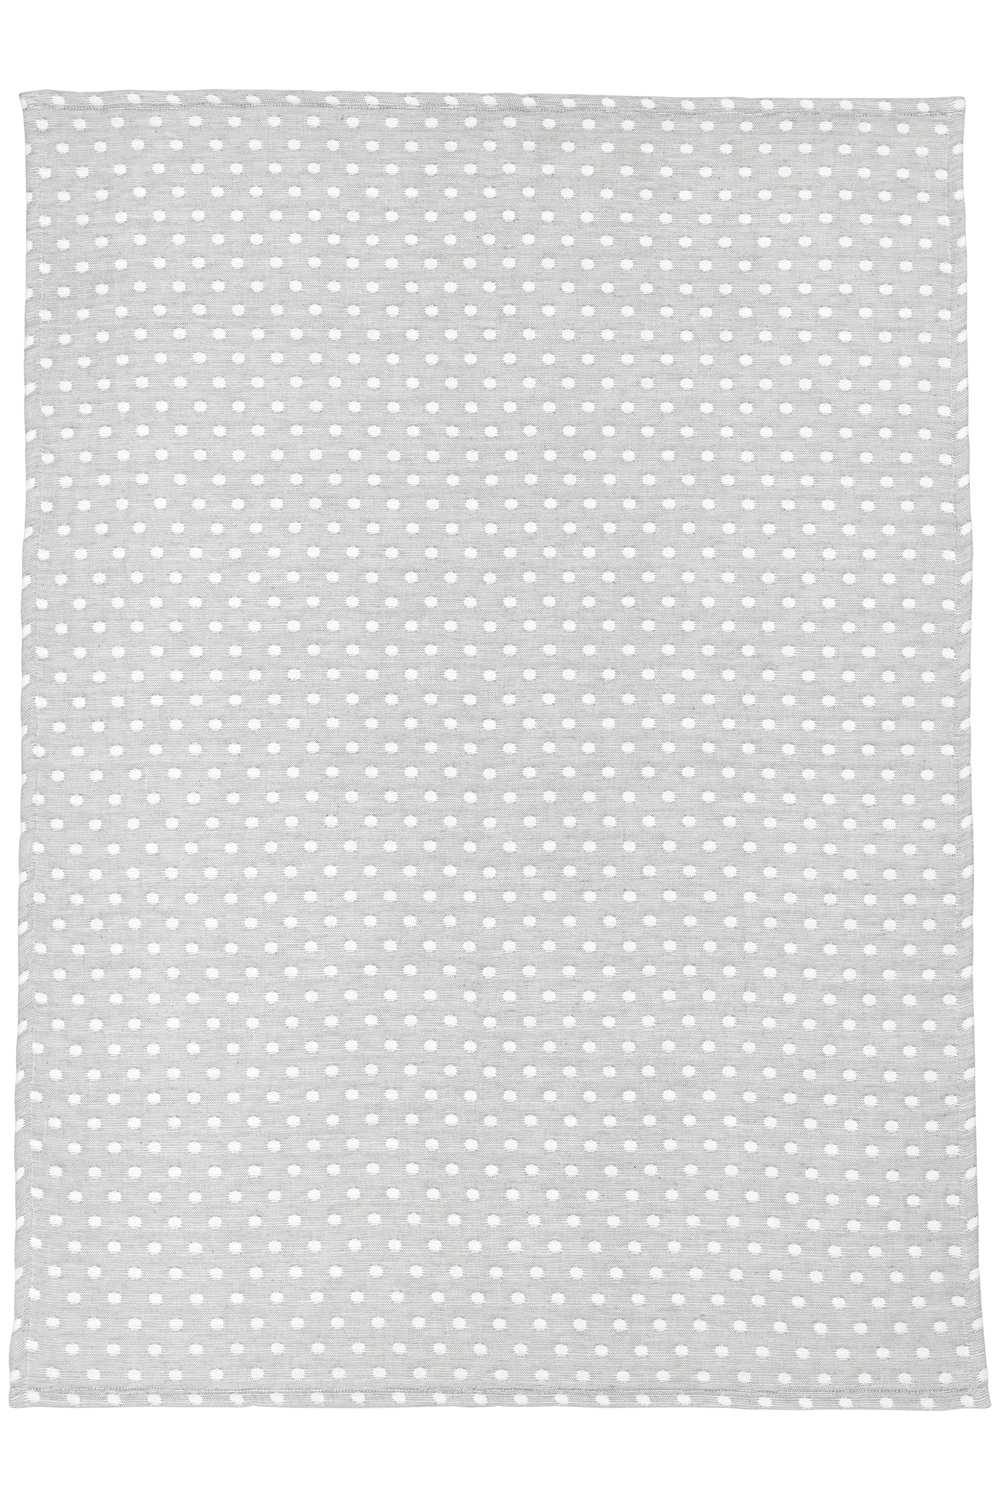 Wiegdeken Little Dots - grey - 75x100cm